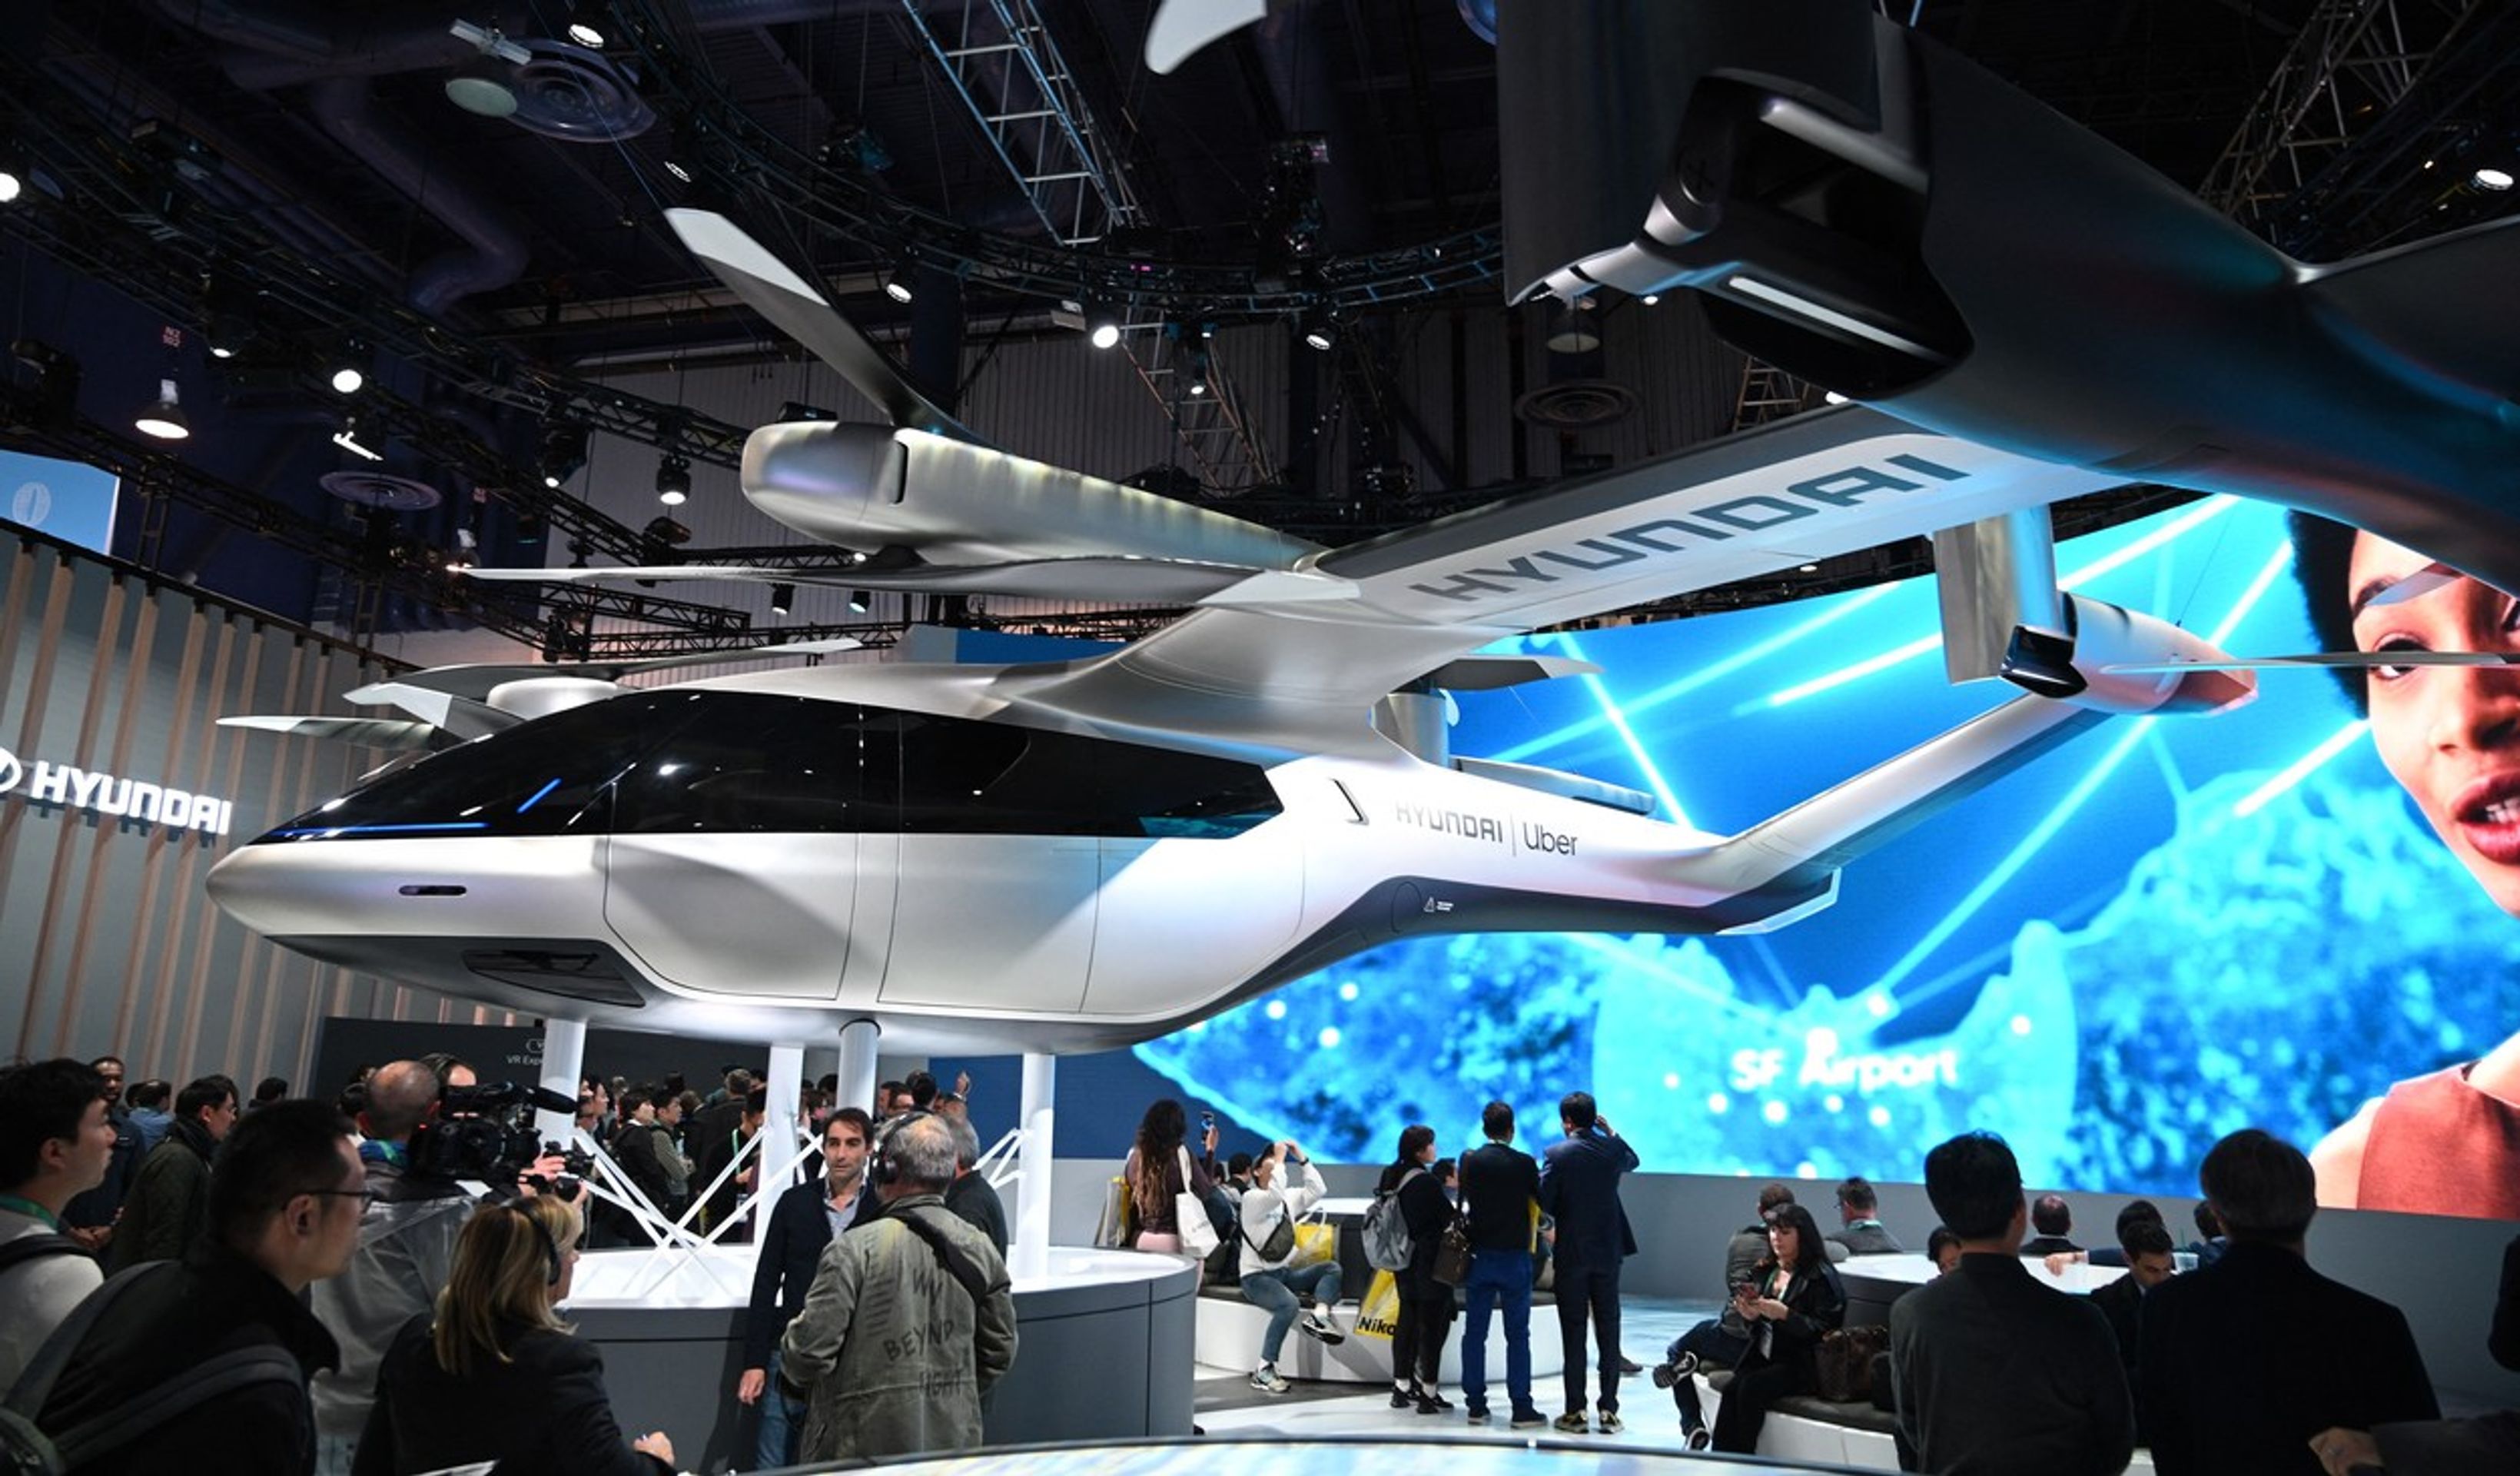 Elektrický letoun a přistávací plocha pro nový způsob přepravy - Hyundai chystá revoluci v městské dopravě (5/9)